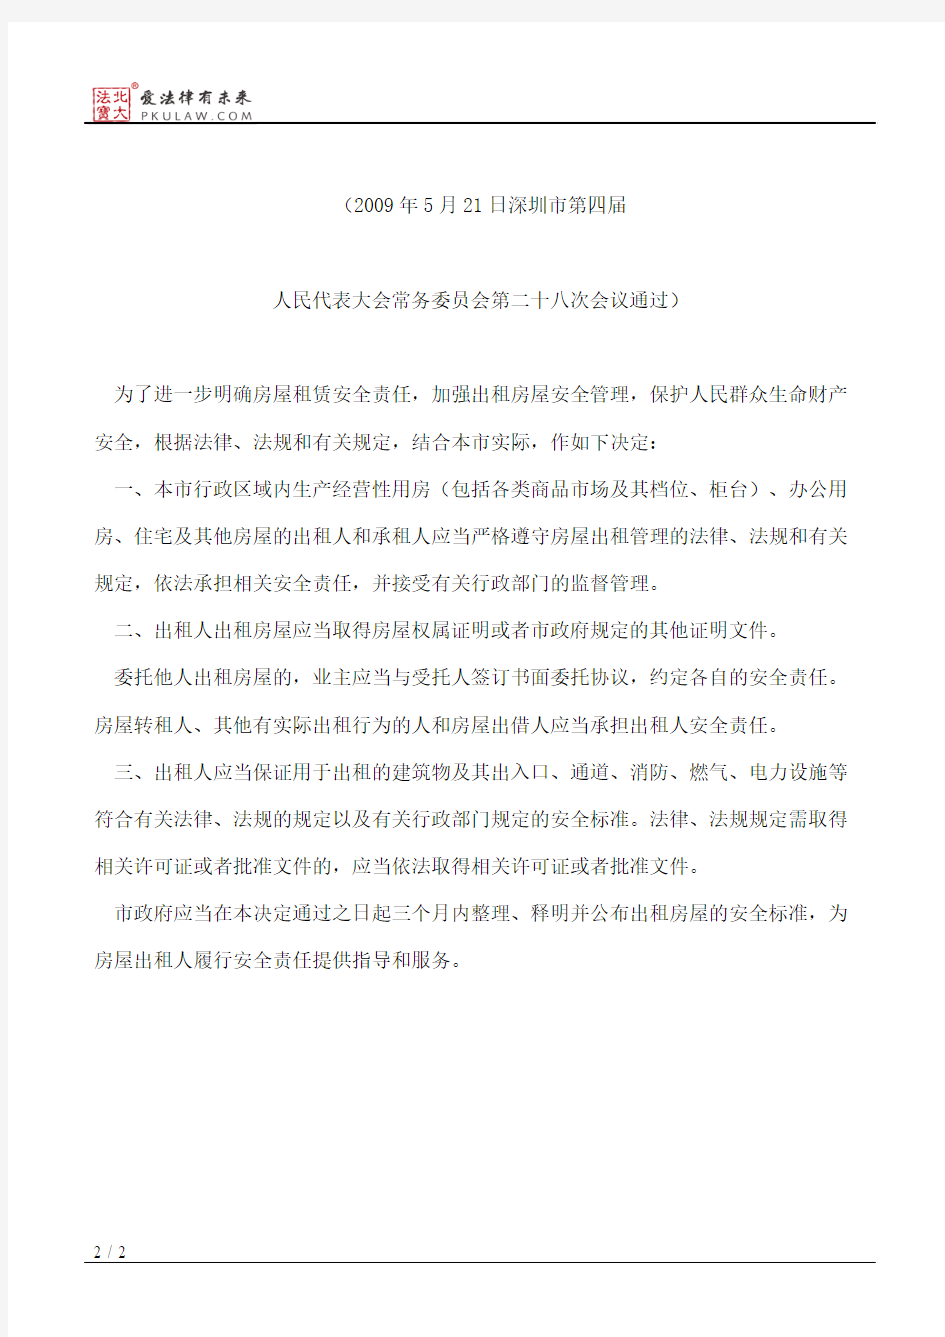 深圳市人大常委会关于加强房屋租赁安全责任的决定